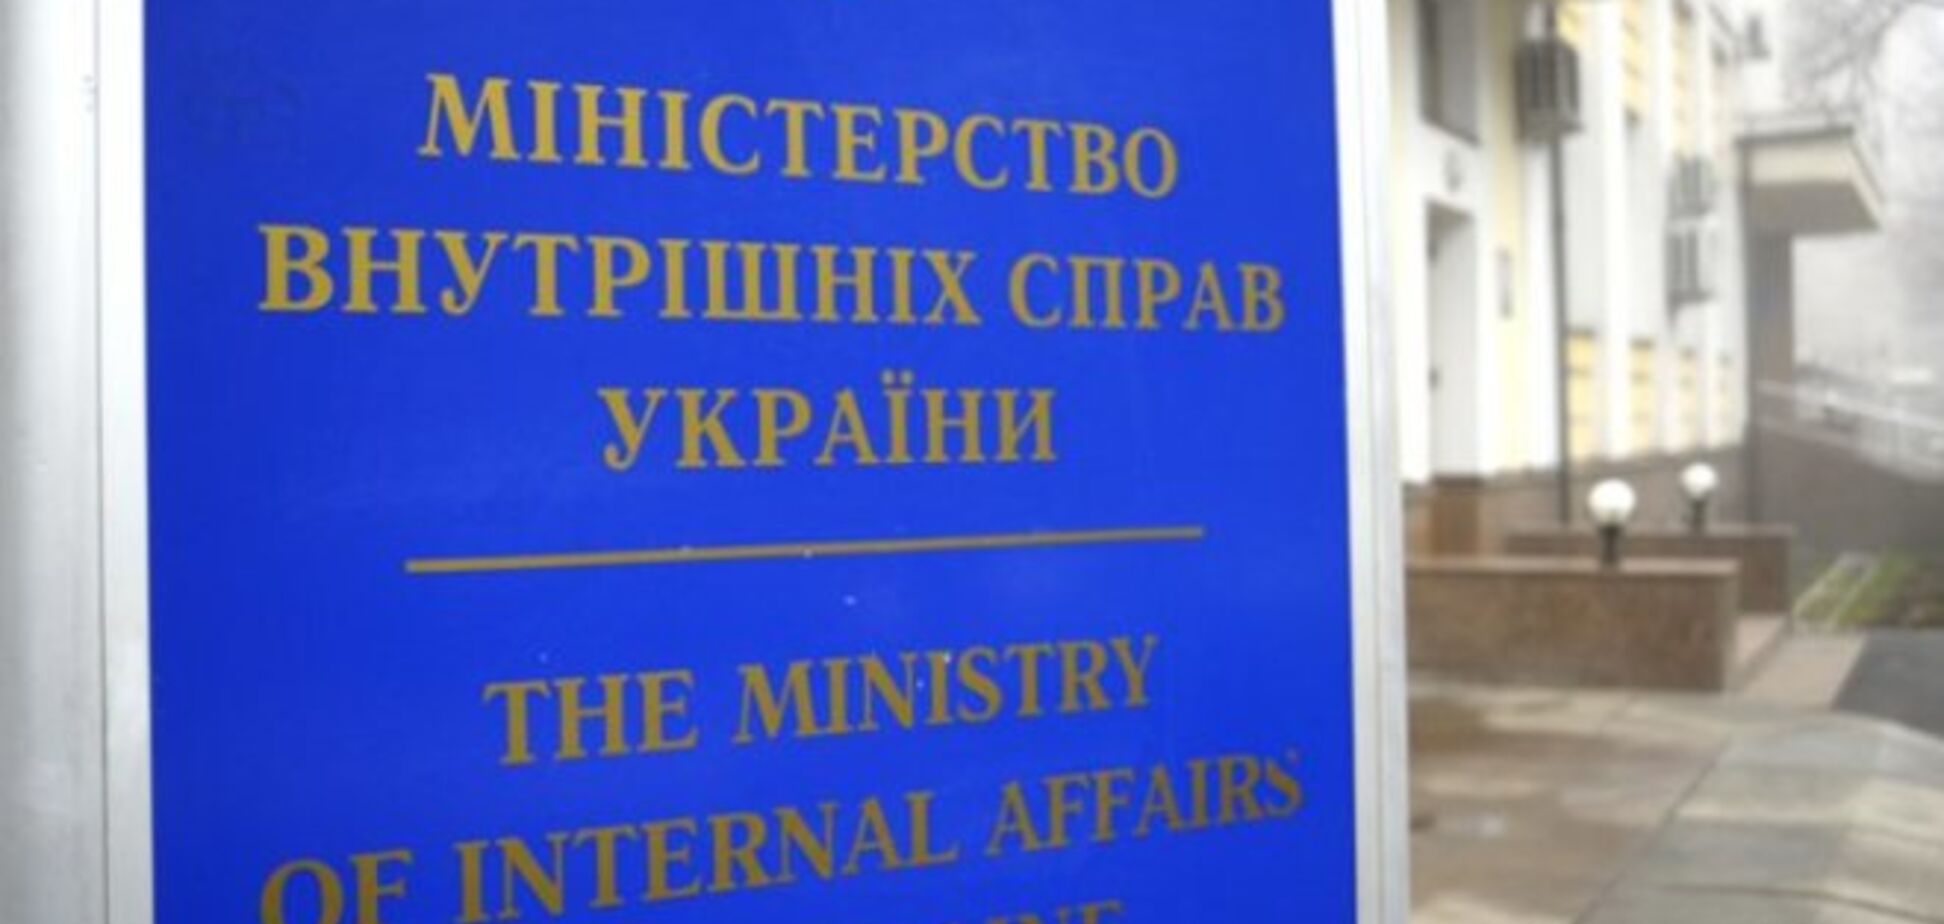 Мошенники под видом кредитных союзов обманули почти 900 украинцев